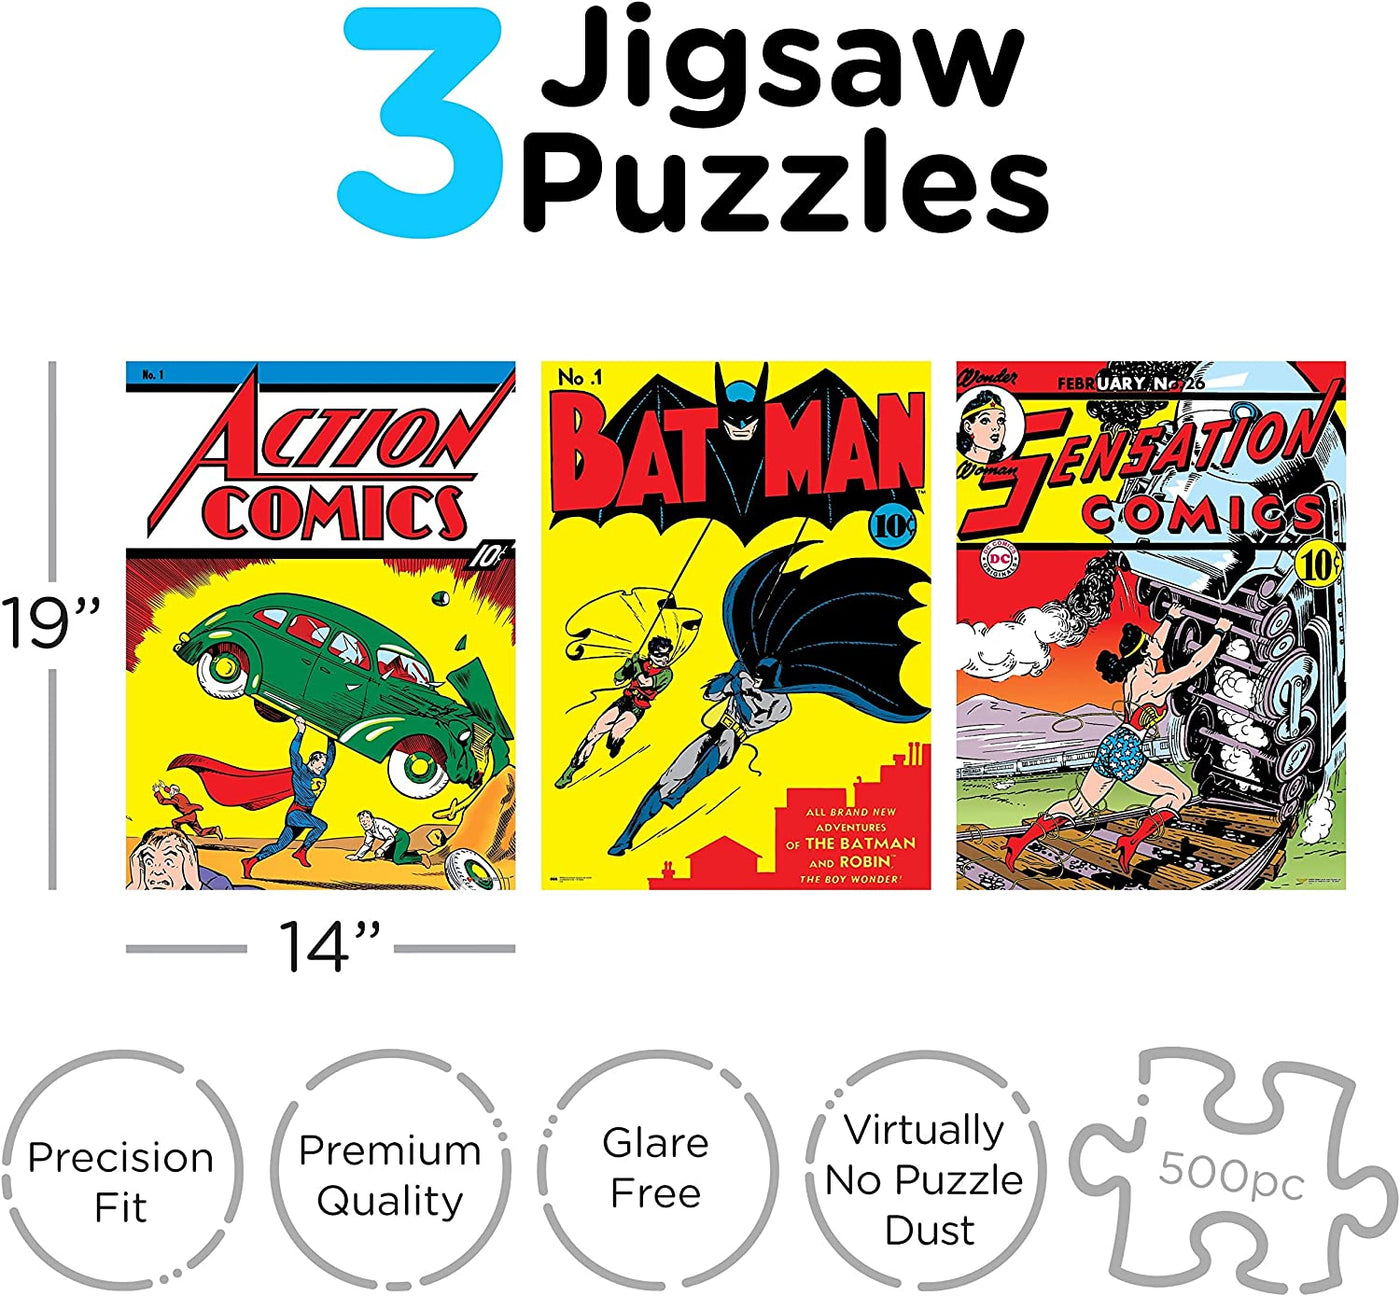 3 x 500pc DC Comics Puzzle  Retro Covers Superman, Batman & Wonder Woman